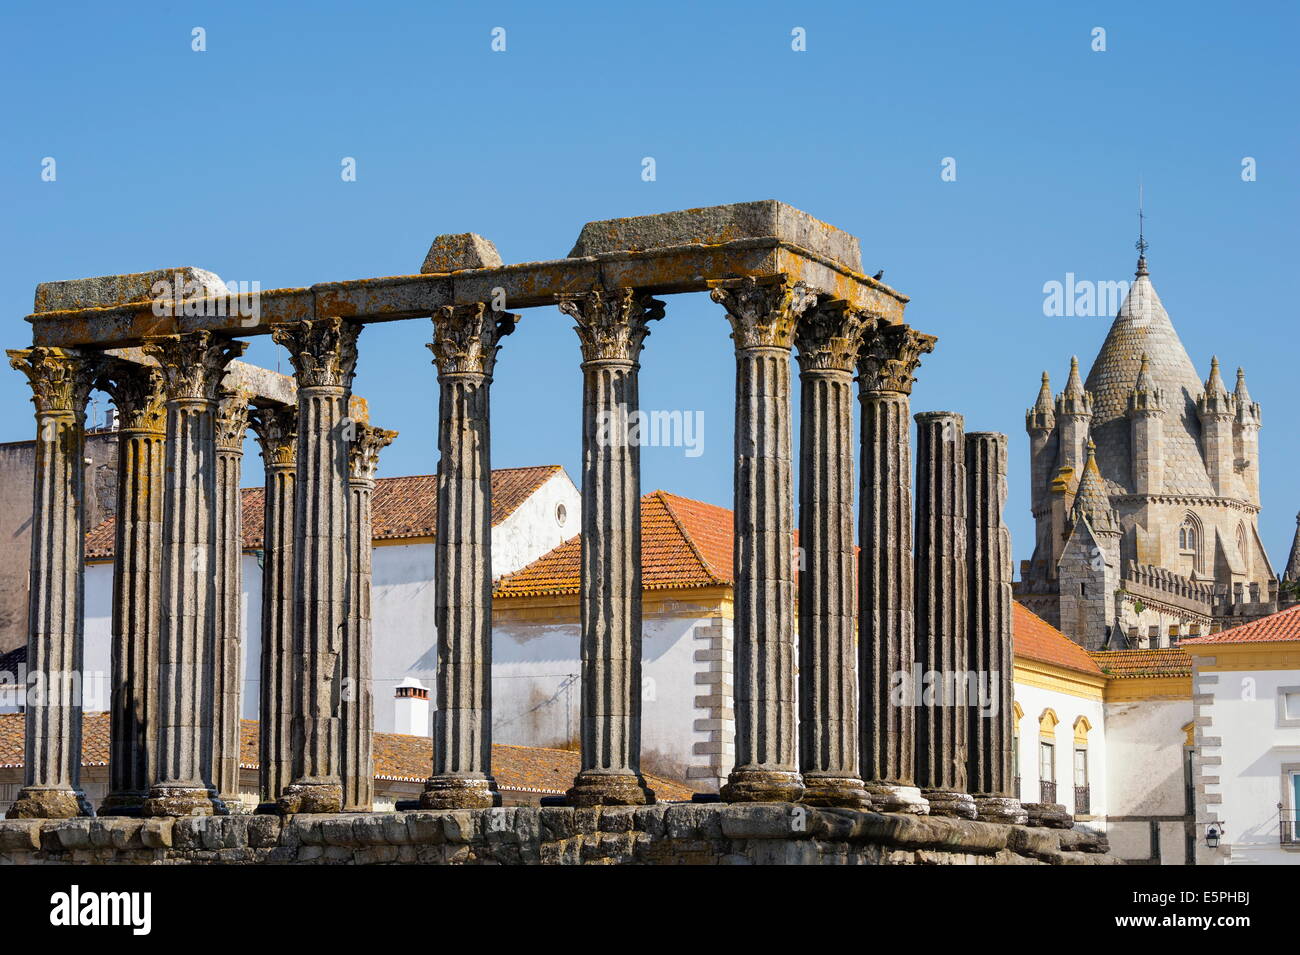 Le temple romain de Diana en face de la cathédrale Santa Maria, Evora, UNESCO World Heritage Site, Alentejo, Portugal, Europe Banque D'Images